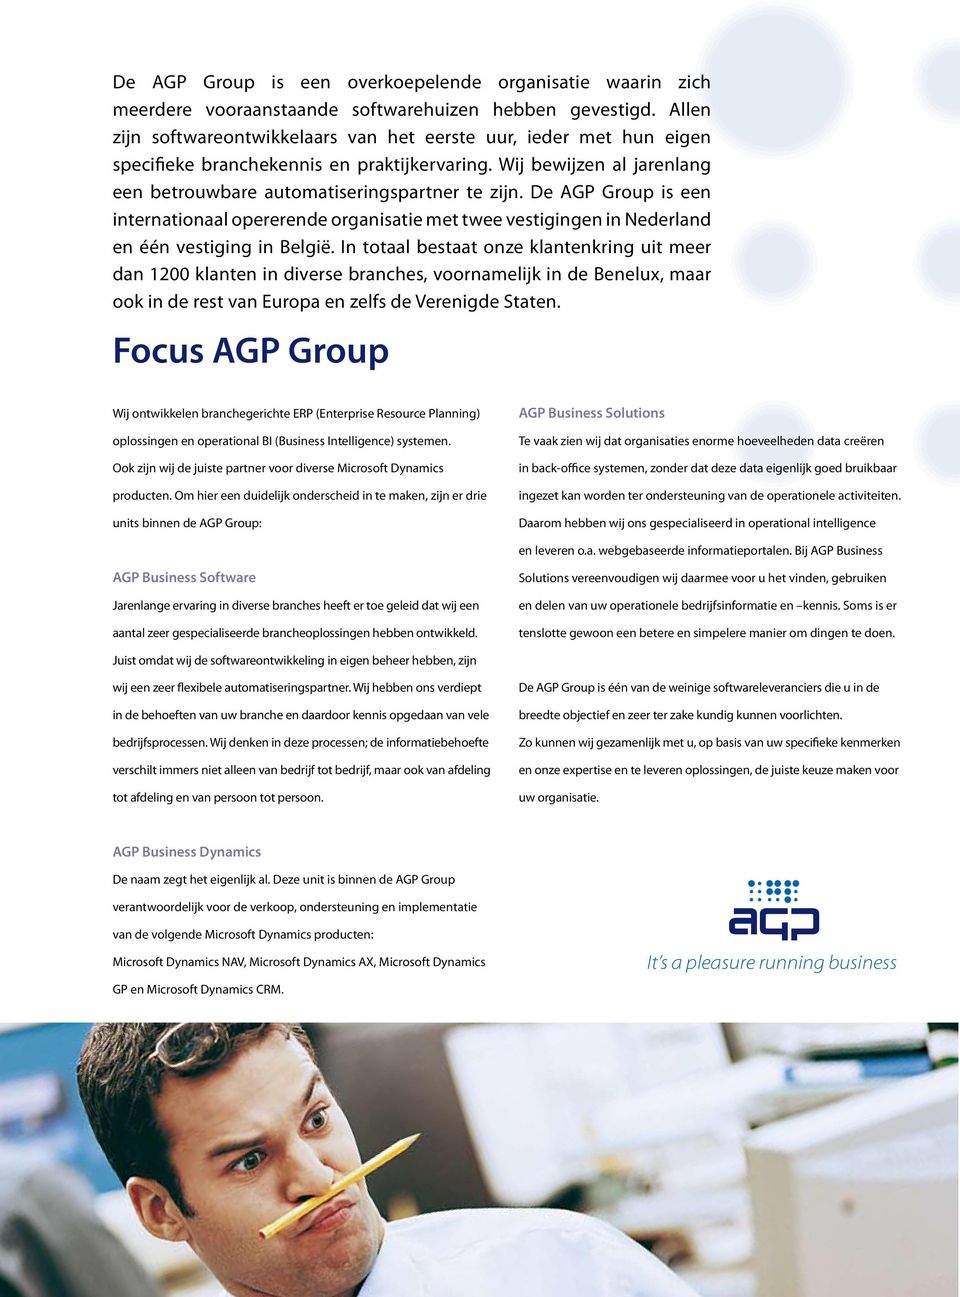 De AGP Group is een internationaal opererende organisatie met twee vestigingen in Nederland en één vestiging in België.